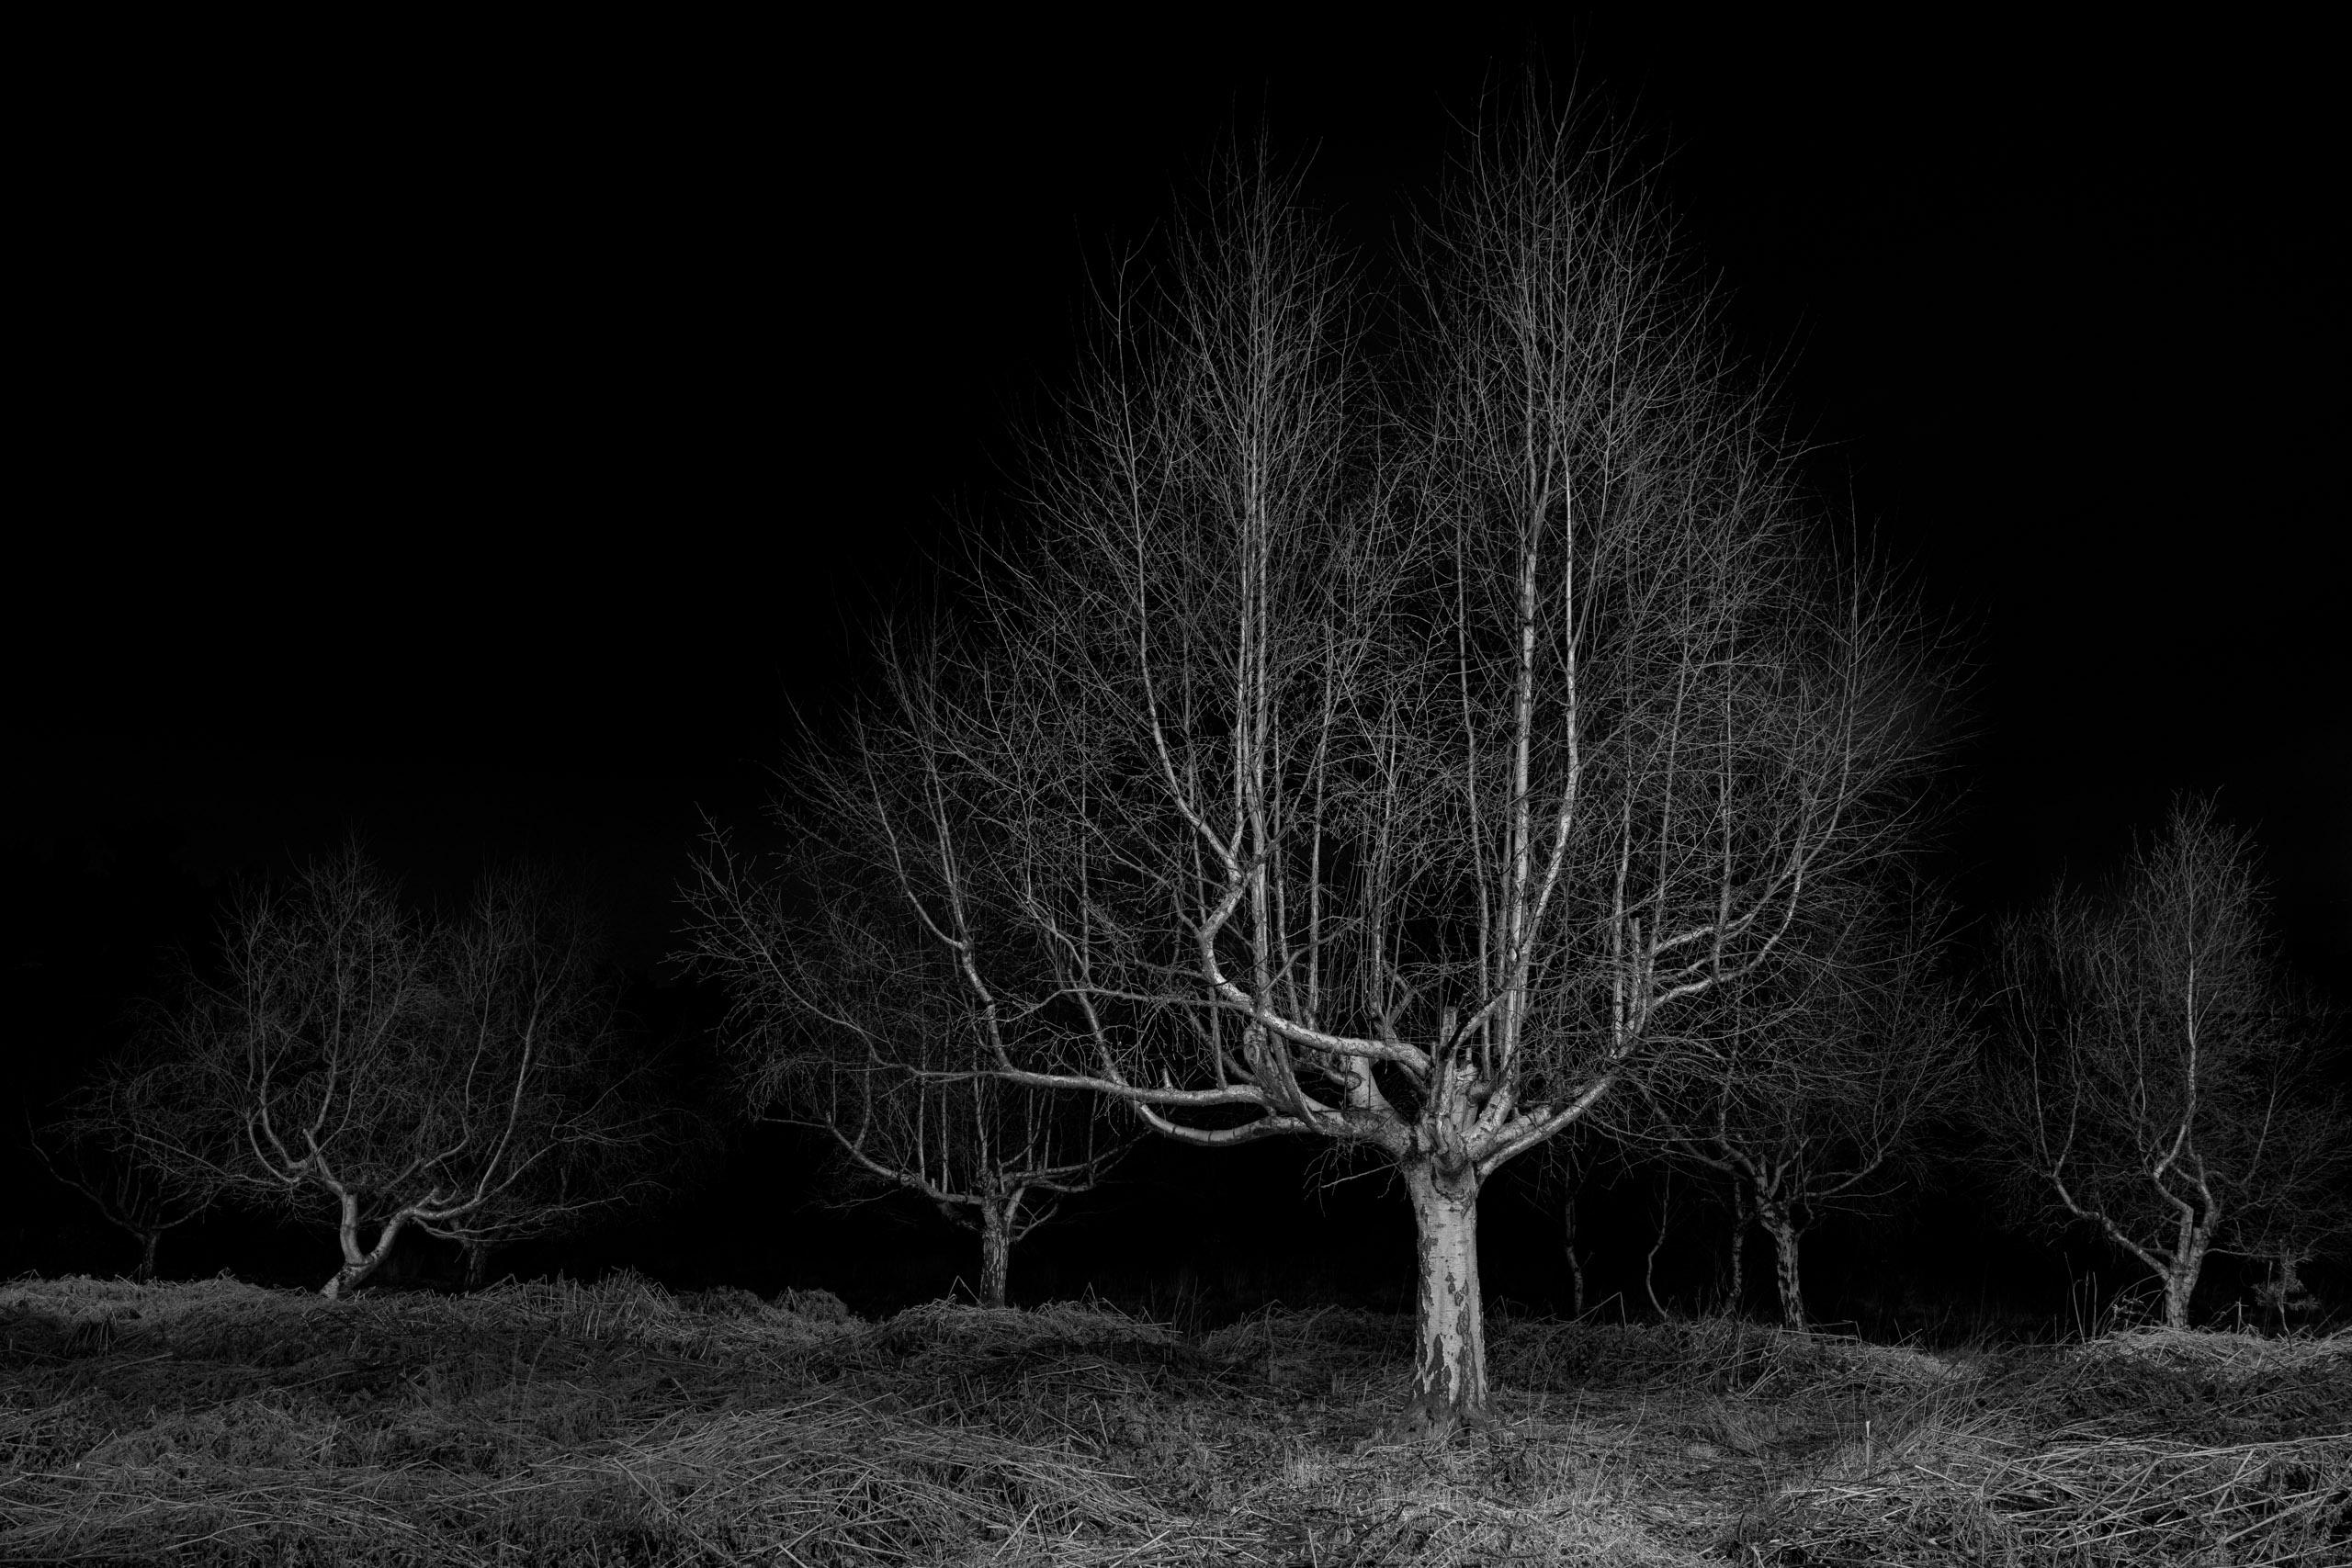 Gathering, Twilight #19, bouleau argenté, imprimé paysage noir et blanc